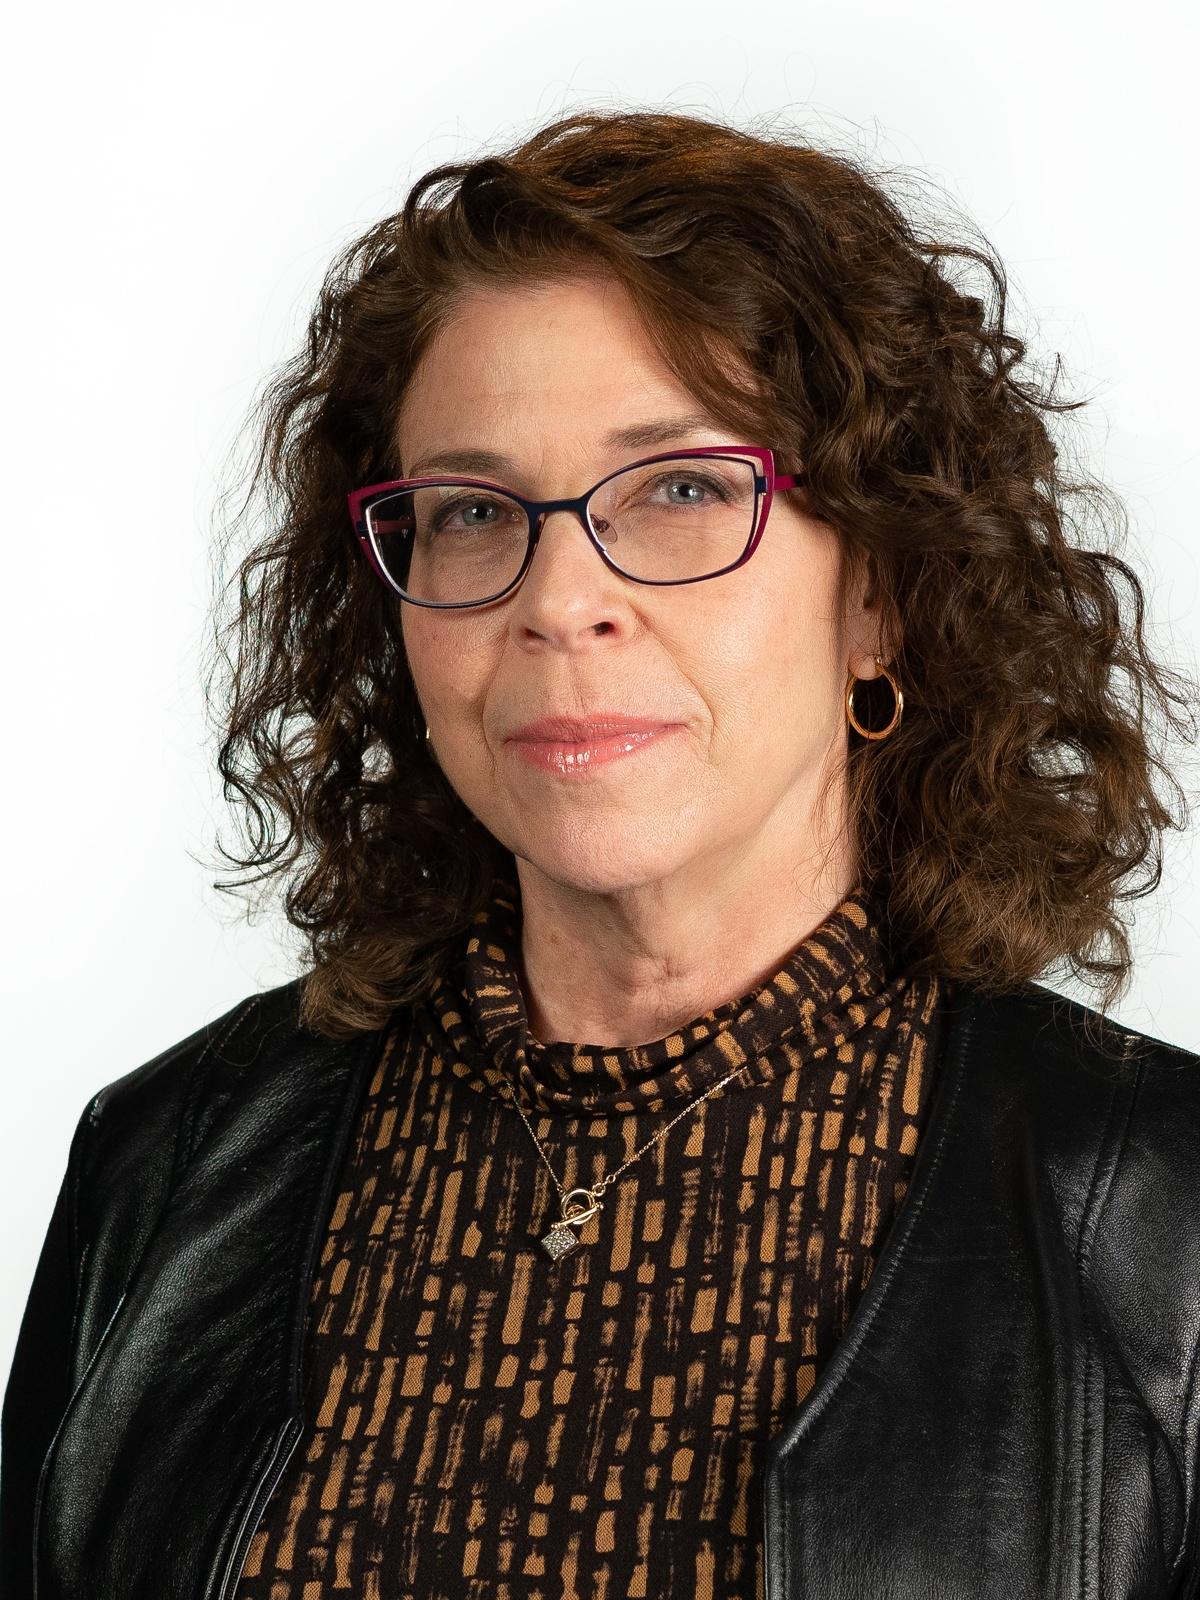 Lisa D. Olken, Director of Content